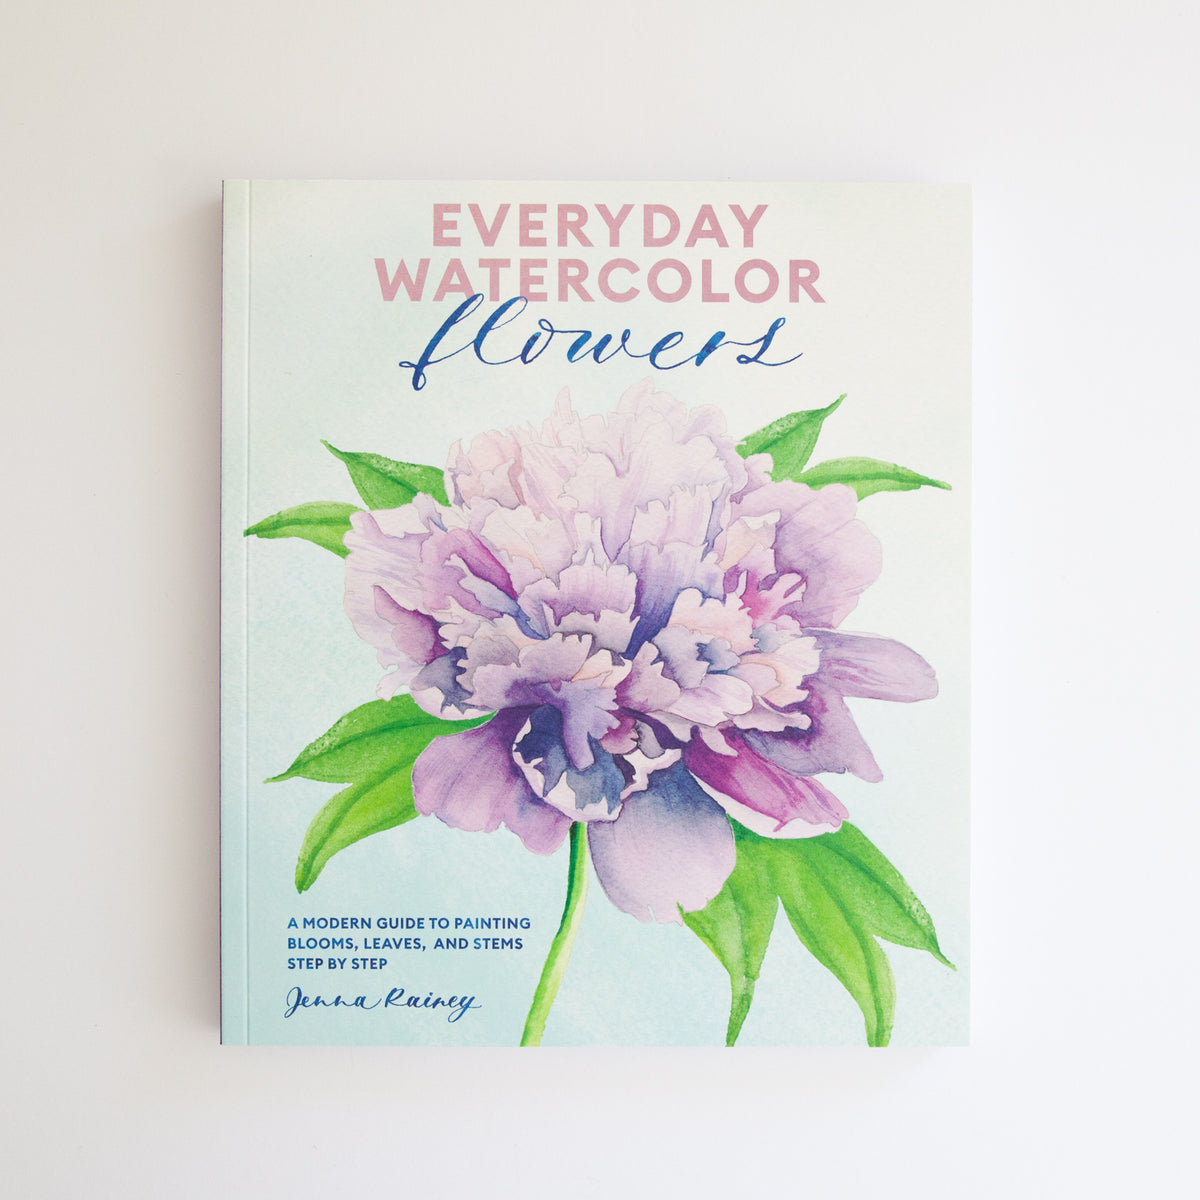 Jenna Rainey - Painting water🌊💧. My third book “Everyday